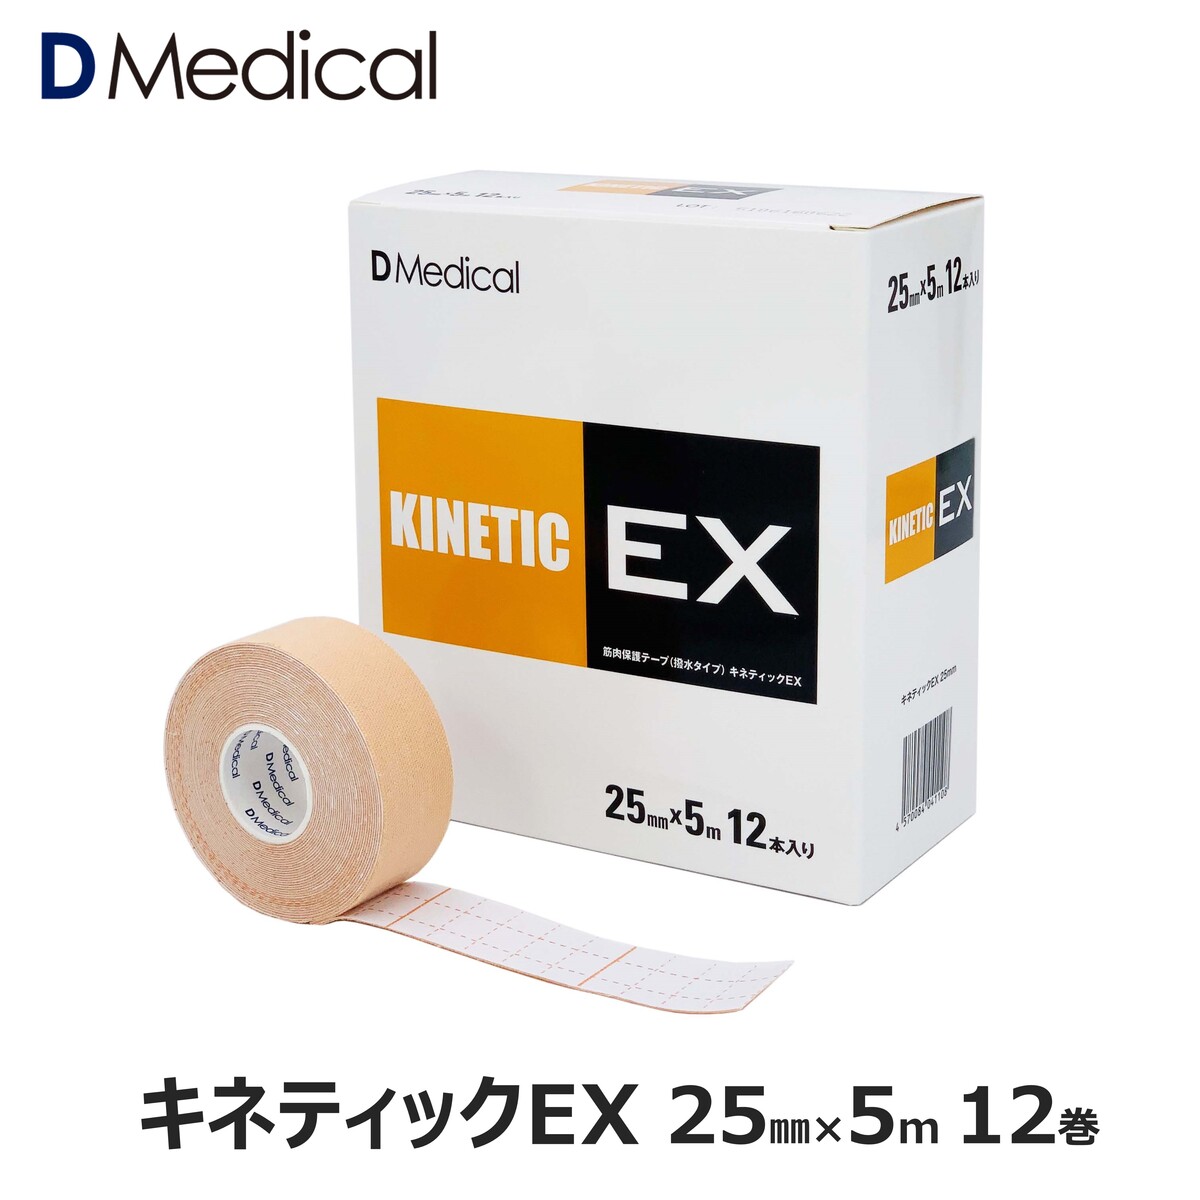 キネティックEX 25mm × 5m 12巻 キネシオ テーピング DMedical Dメディカル キネシオロジーテープ キネシオテープ 伸縮 テーピングテープ  2.5cm 首 指 手首 送料無料